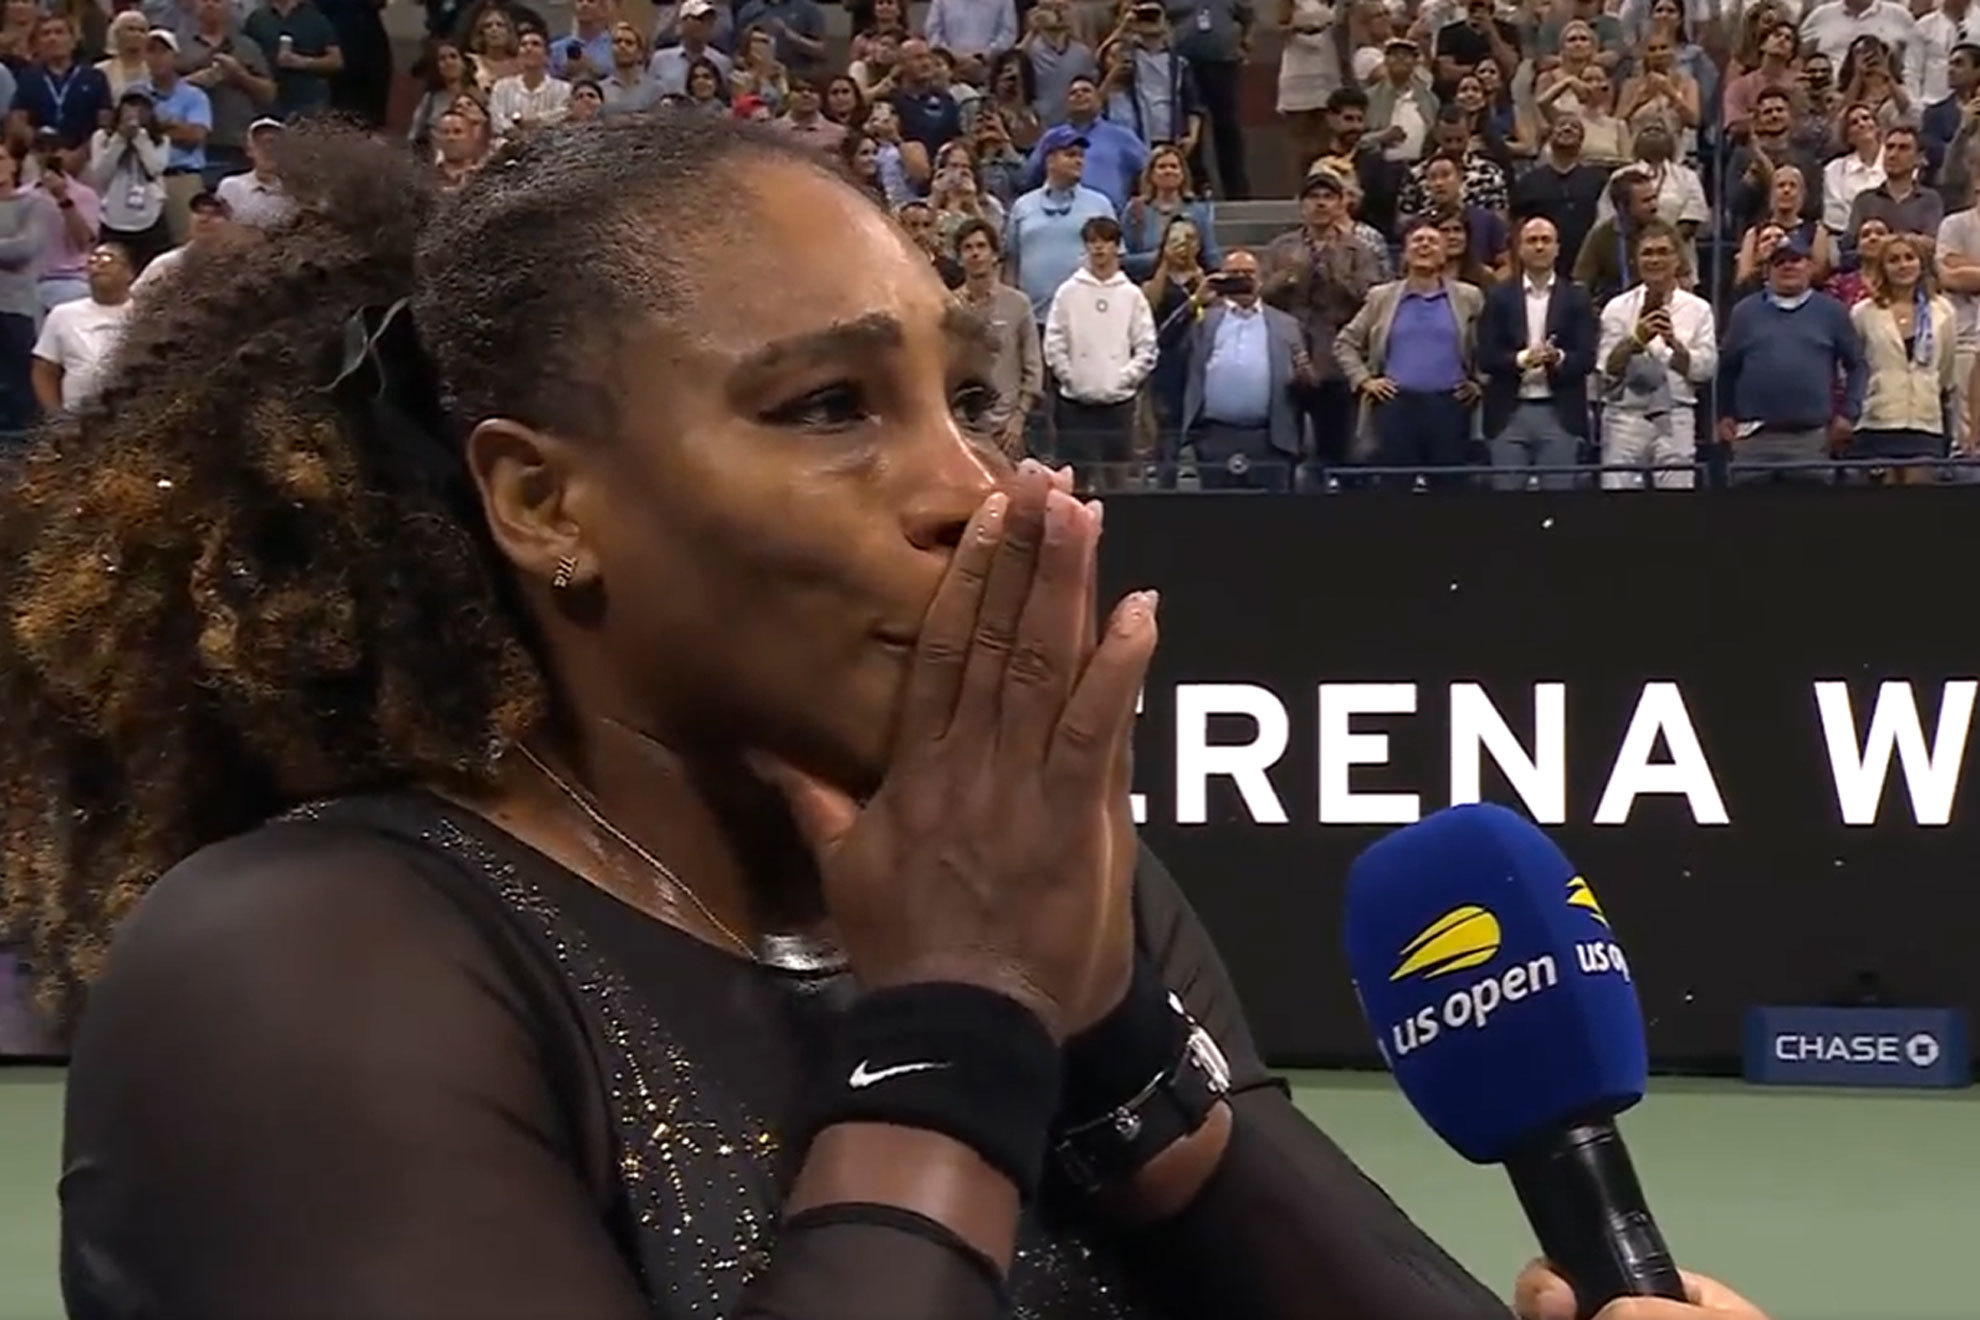 La emocin de Serena Williams a pie de pista: "Esto son lgrimas de alegra, creo, no lo s..."